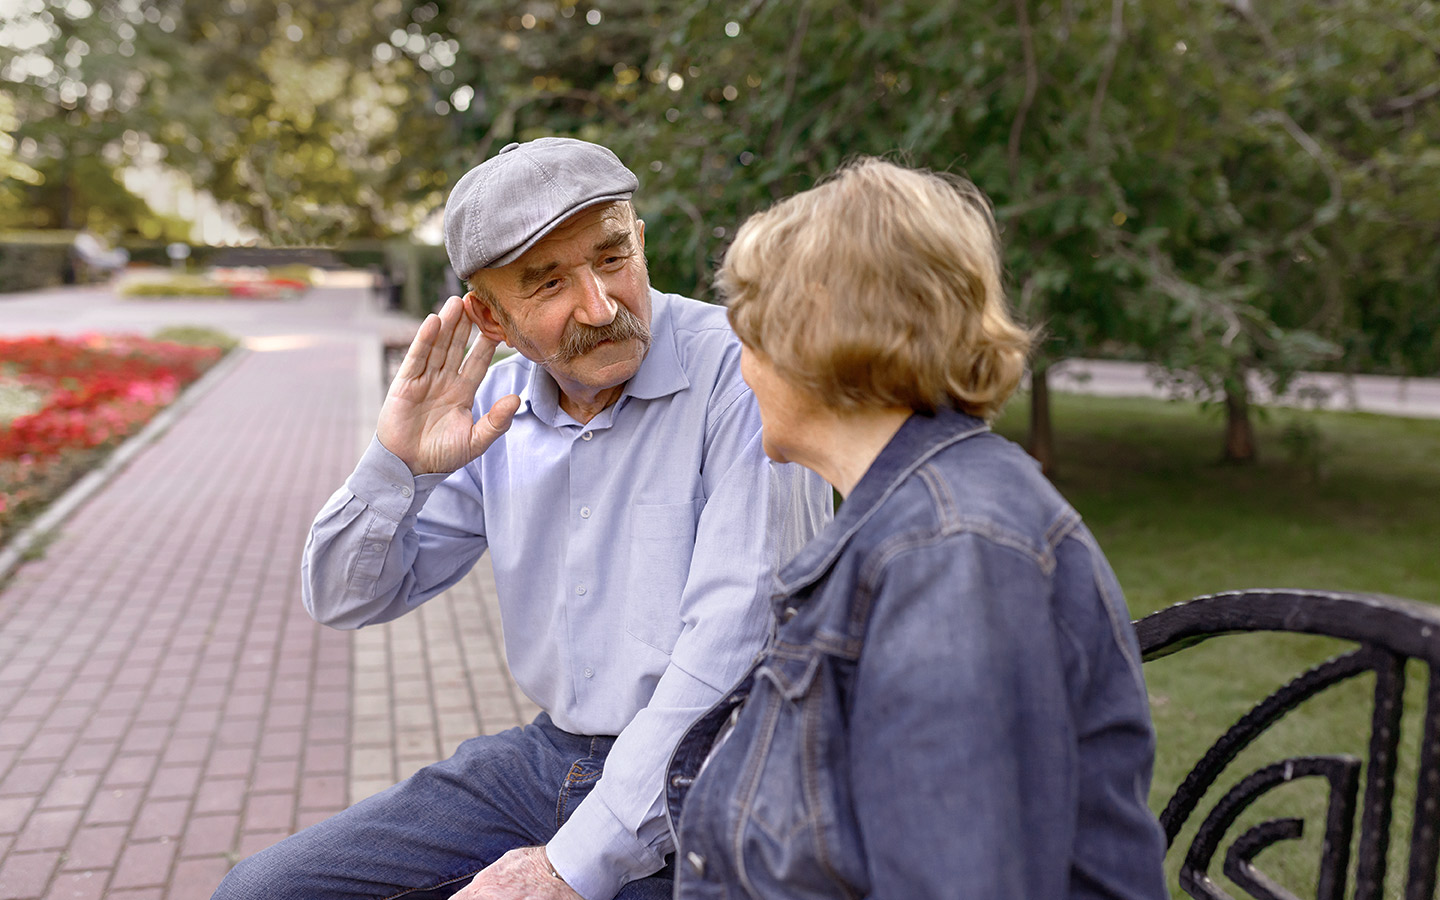 Foto: Zwei Personen im Gespräch auf einer Parkbank, der Mann greift sich an ein Ohr, um besser zu hören.